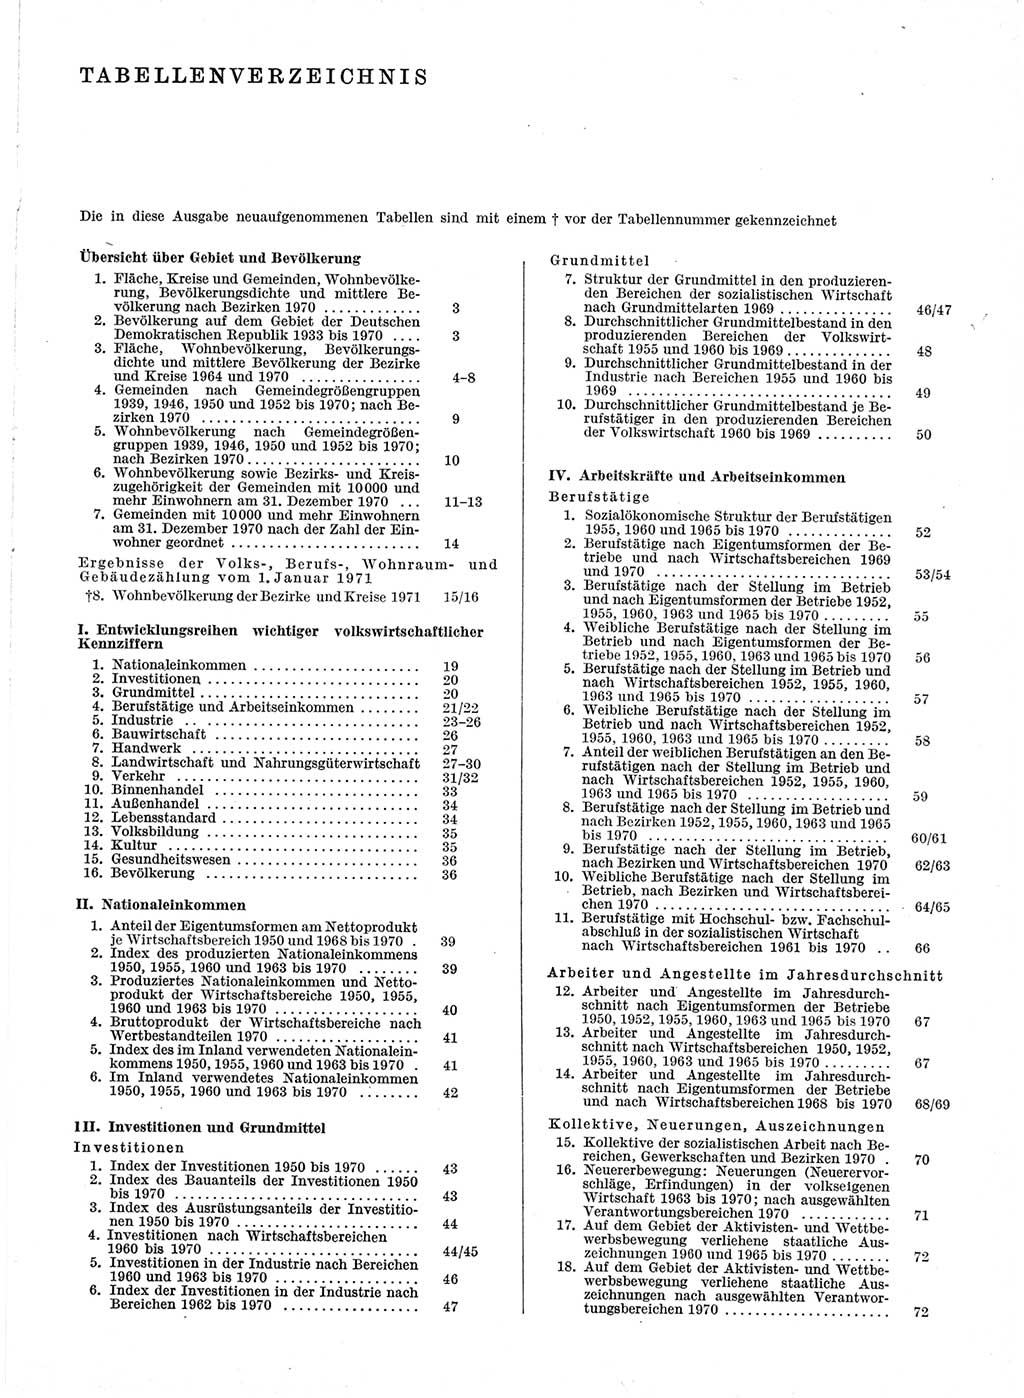 Statistisches Jahrbuch der Deutschen Demokratischen Republik (DDR) 1971, Seite 7 (Stat. Jb. DDR 1971, S. 7)